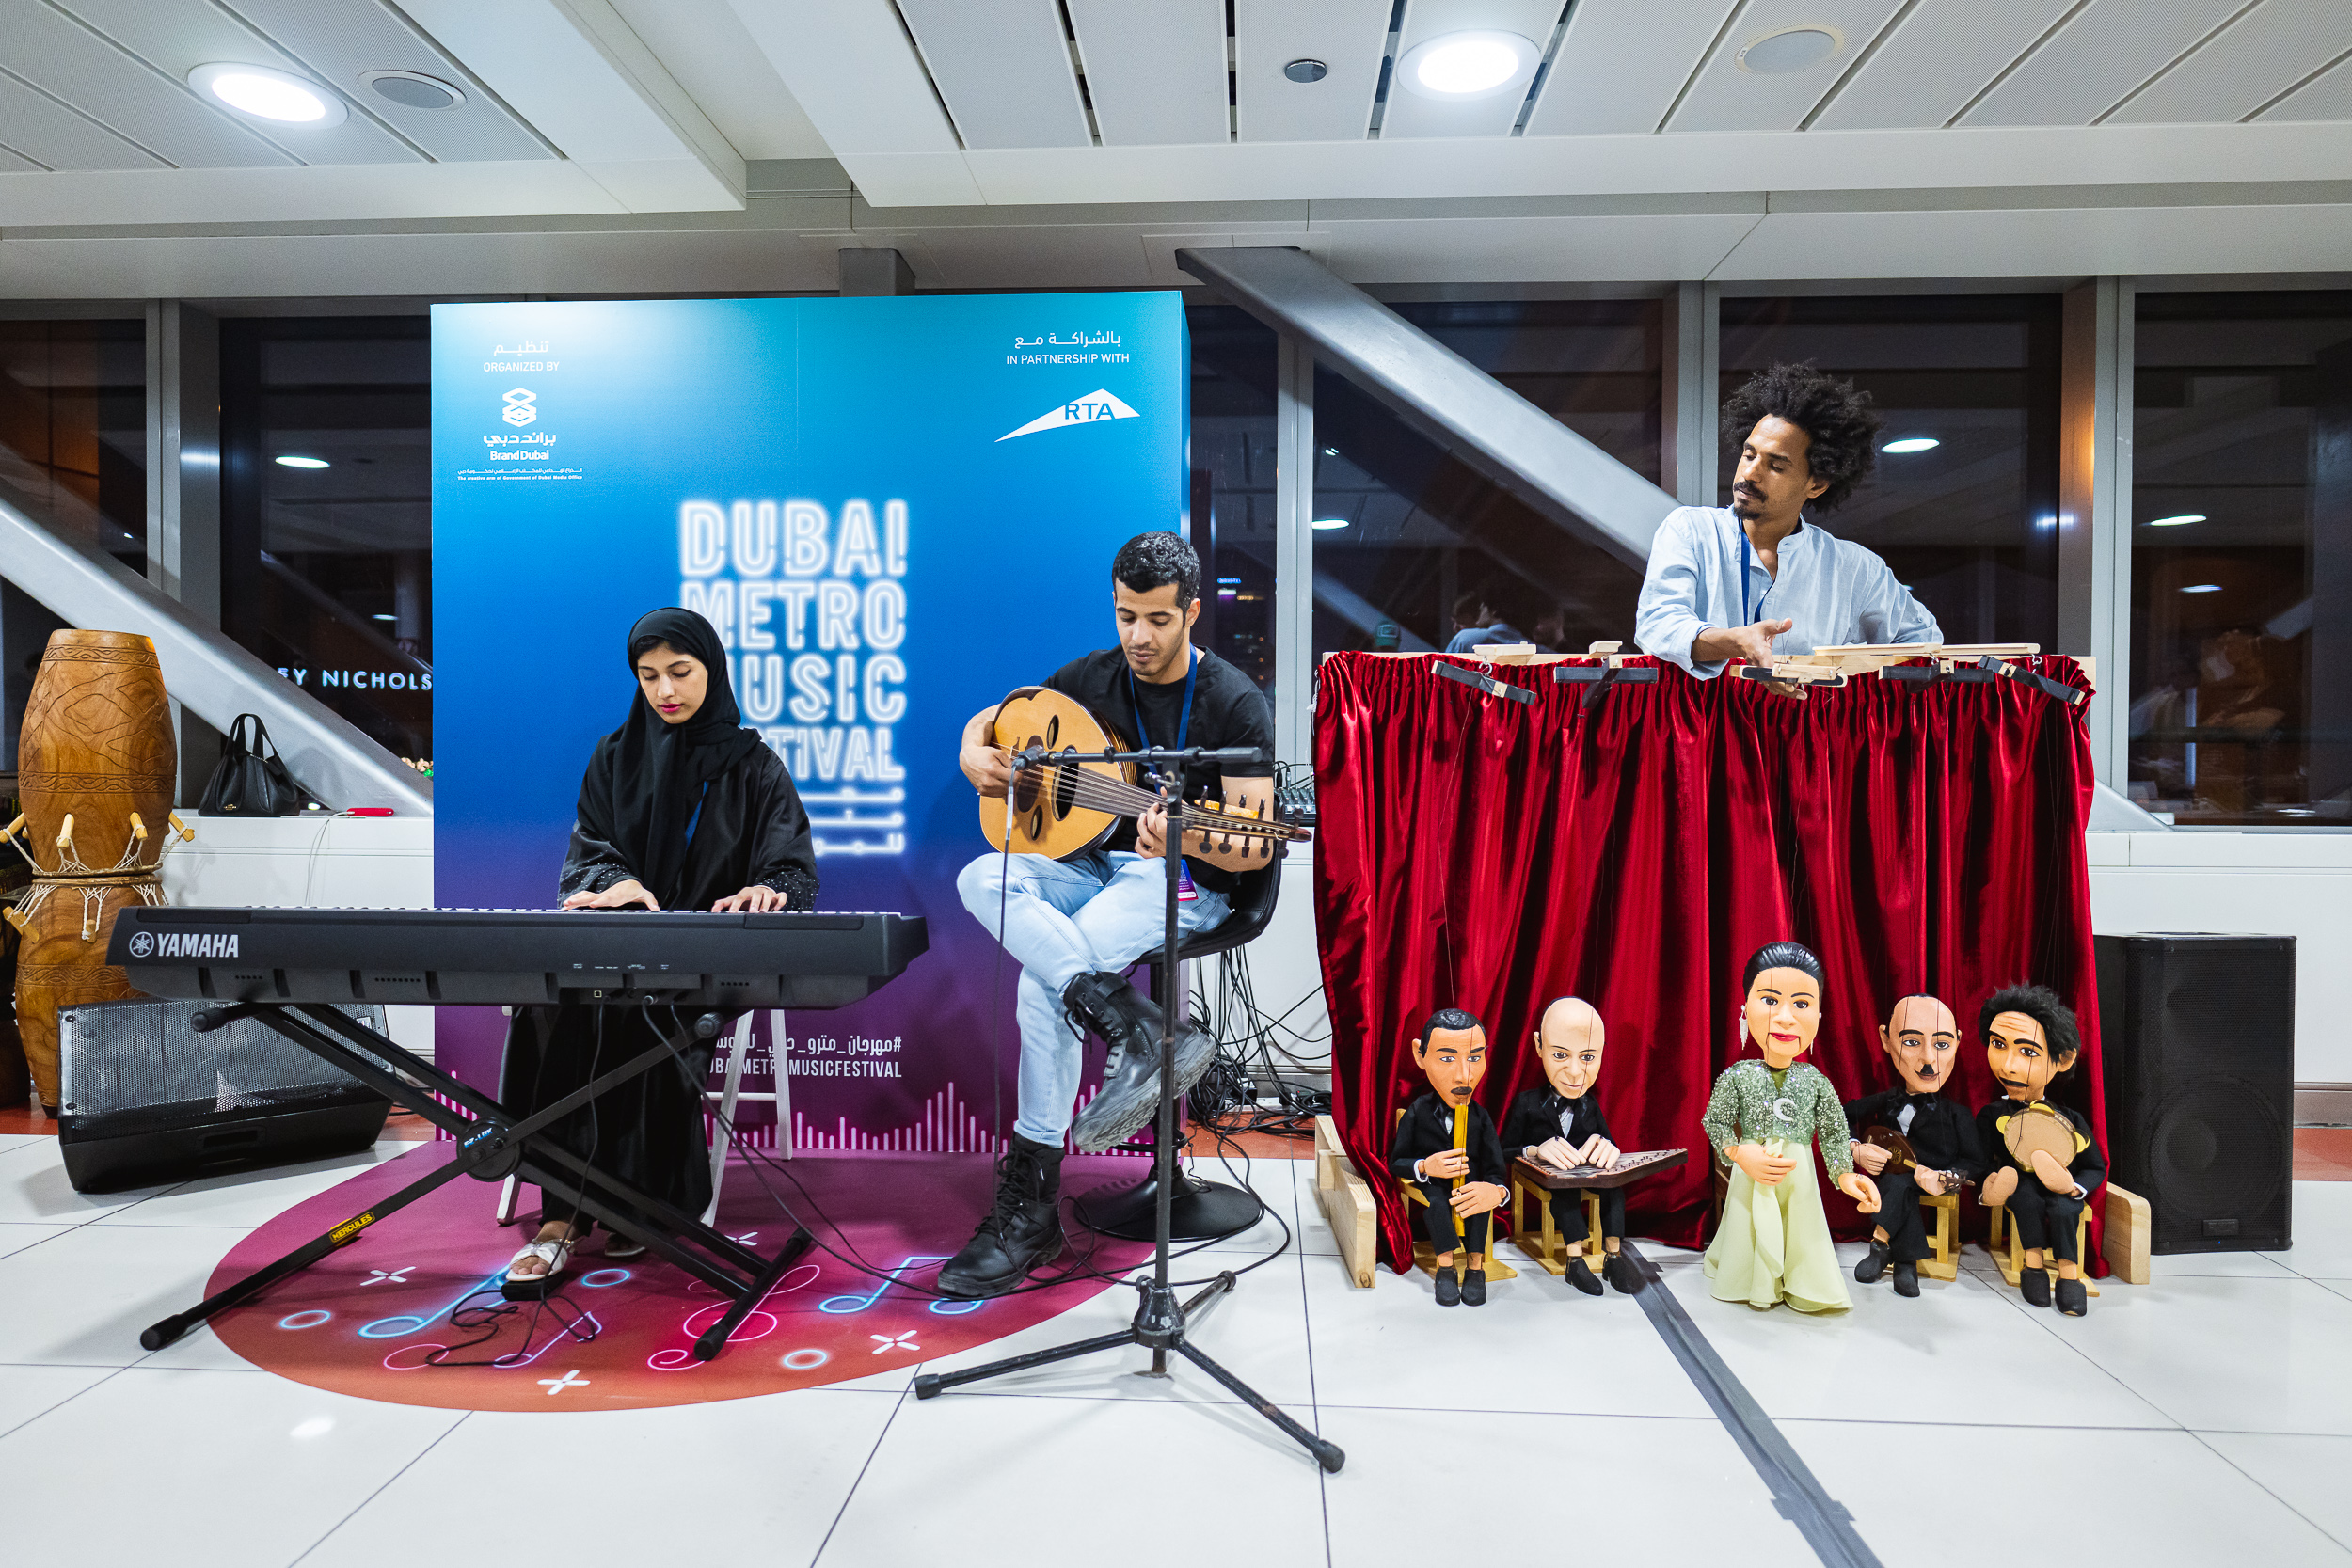 يضفي الموسيقيون العرب نكهة خاصة على مهرجان مترو دبي للموسيقى بمزيجهم المعقد من الأساليب التقليدية والمعاصرة – ترفيه – أحداث